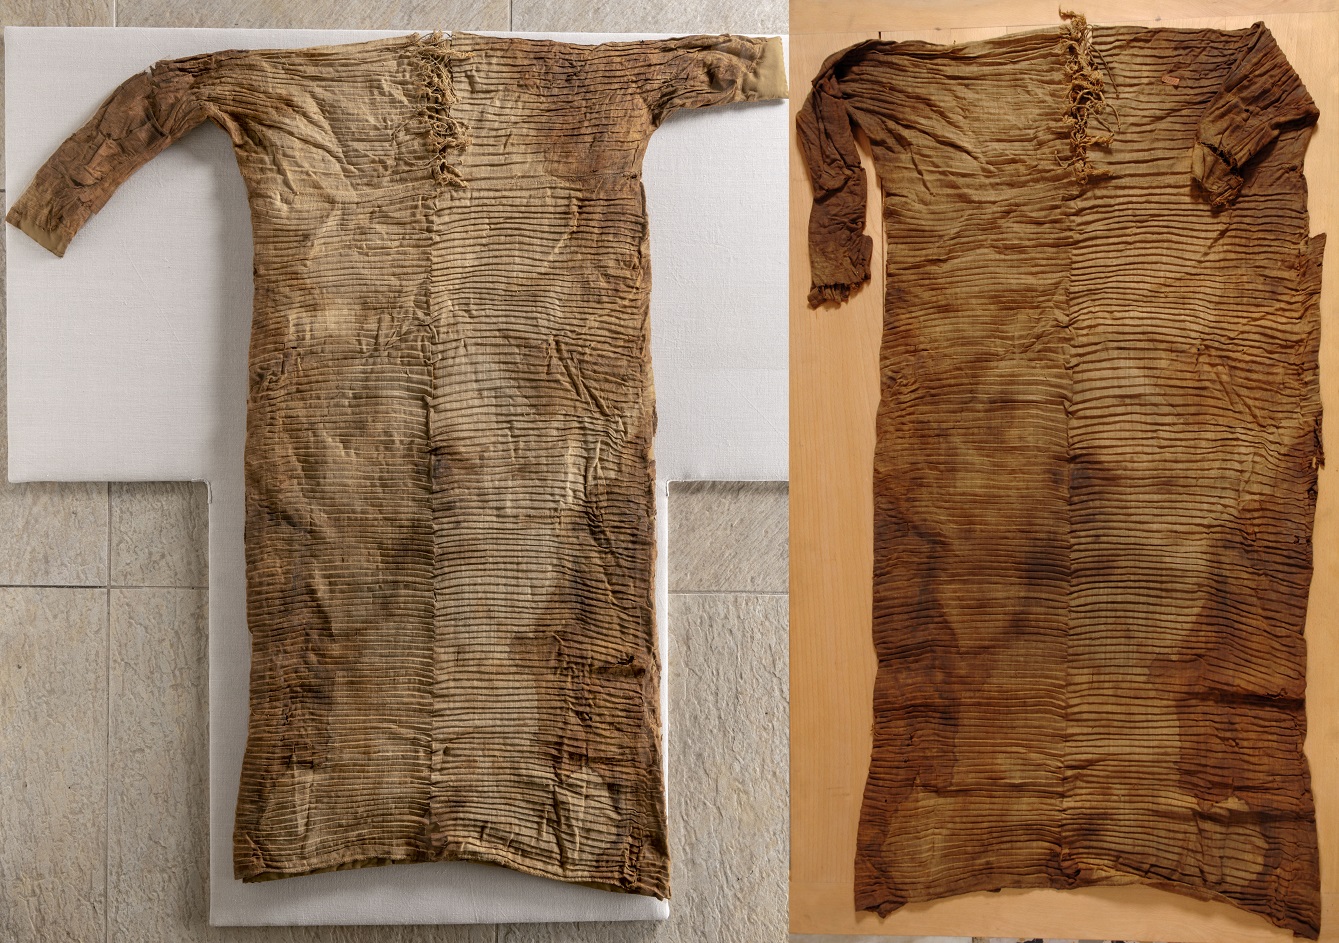 قميص النبي محمد كما زعمت بعض الحسابات لكنه في الحقيقة رداء معروض في المتحف المصريّ في مدينة تورينو الإيطاليّة